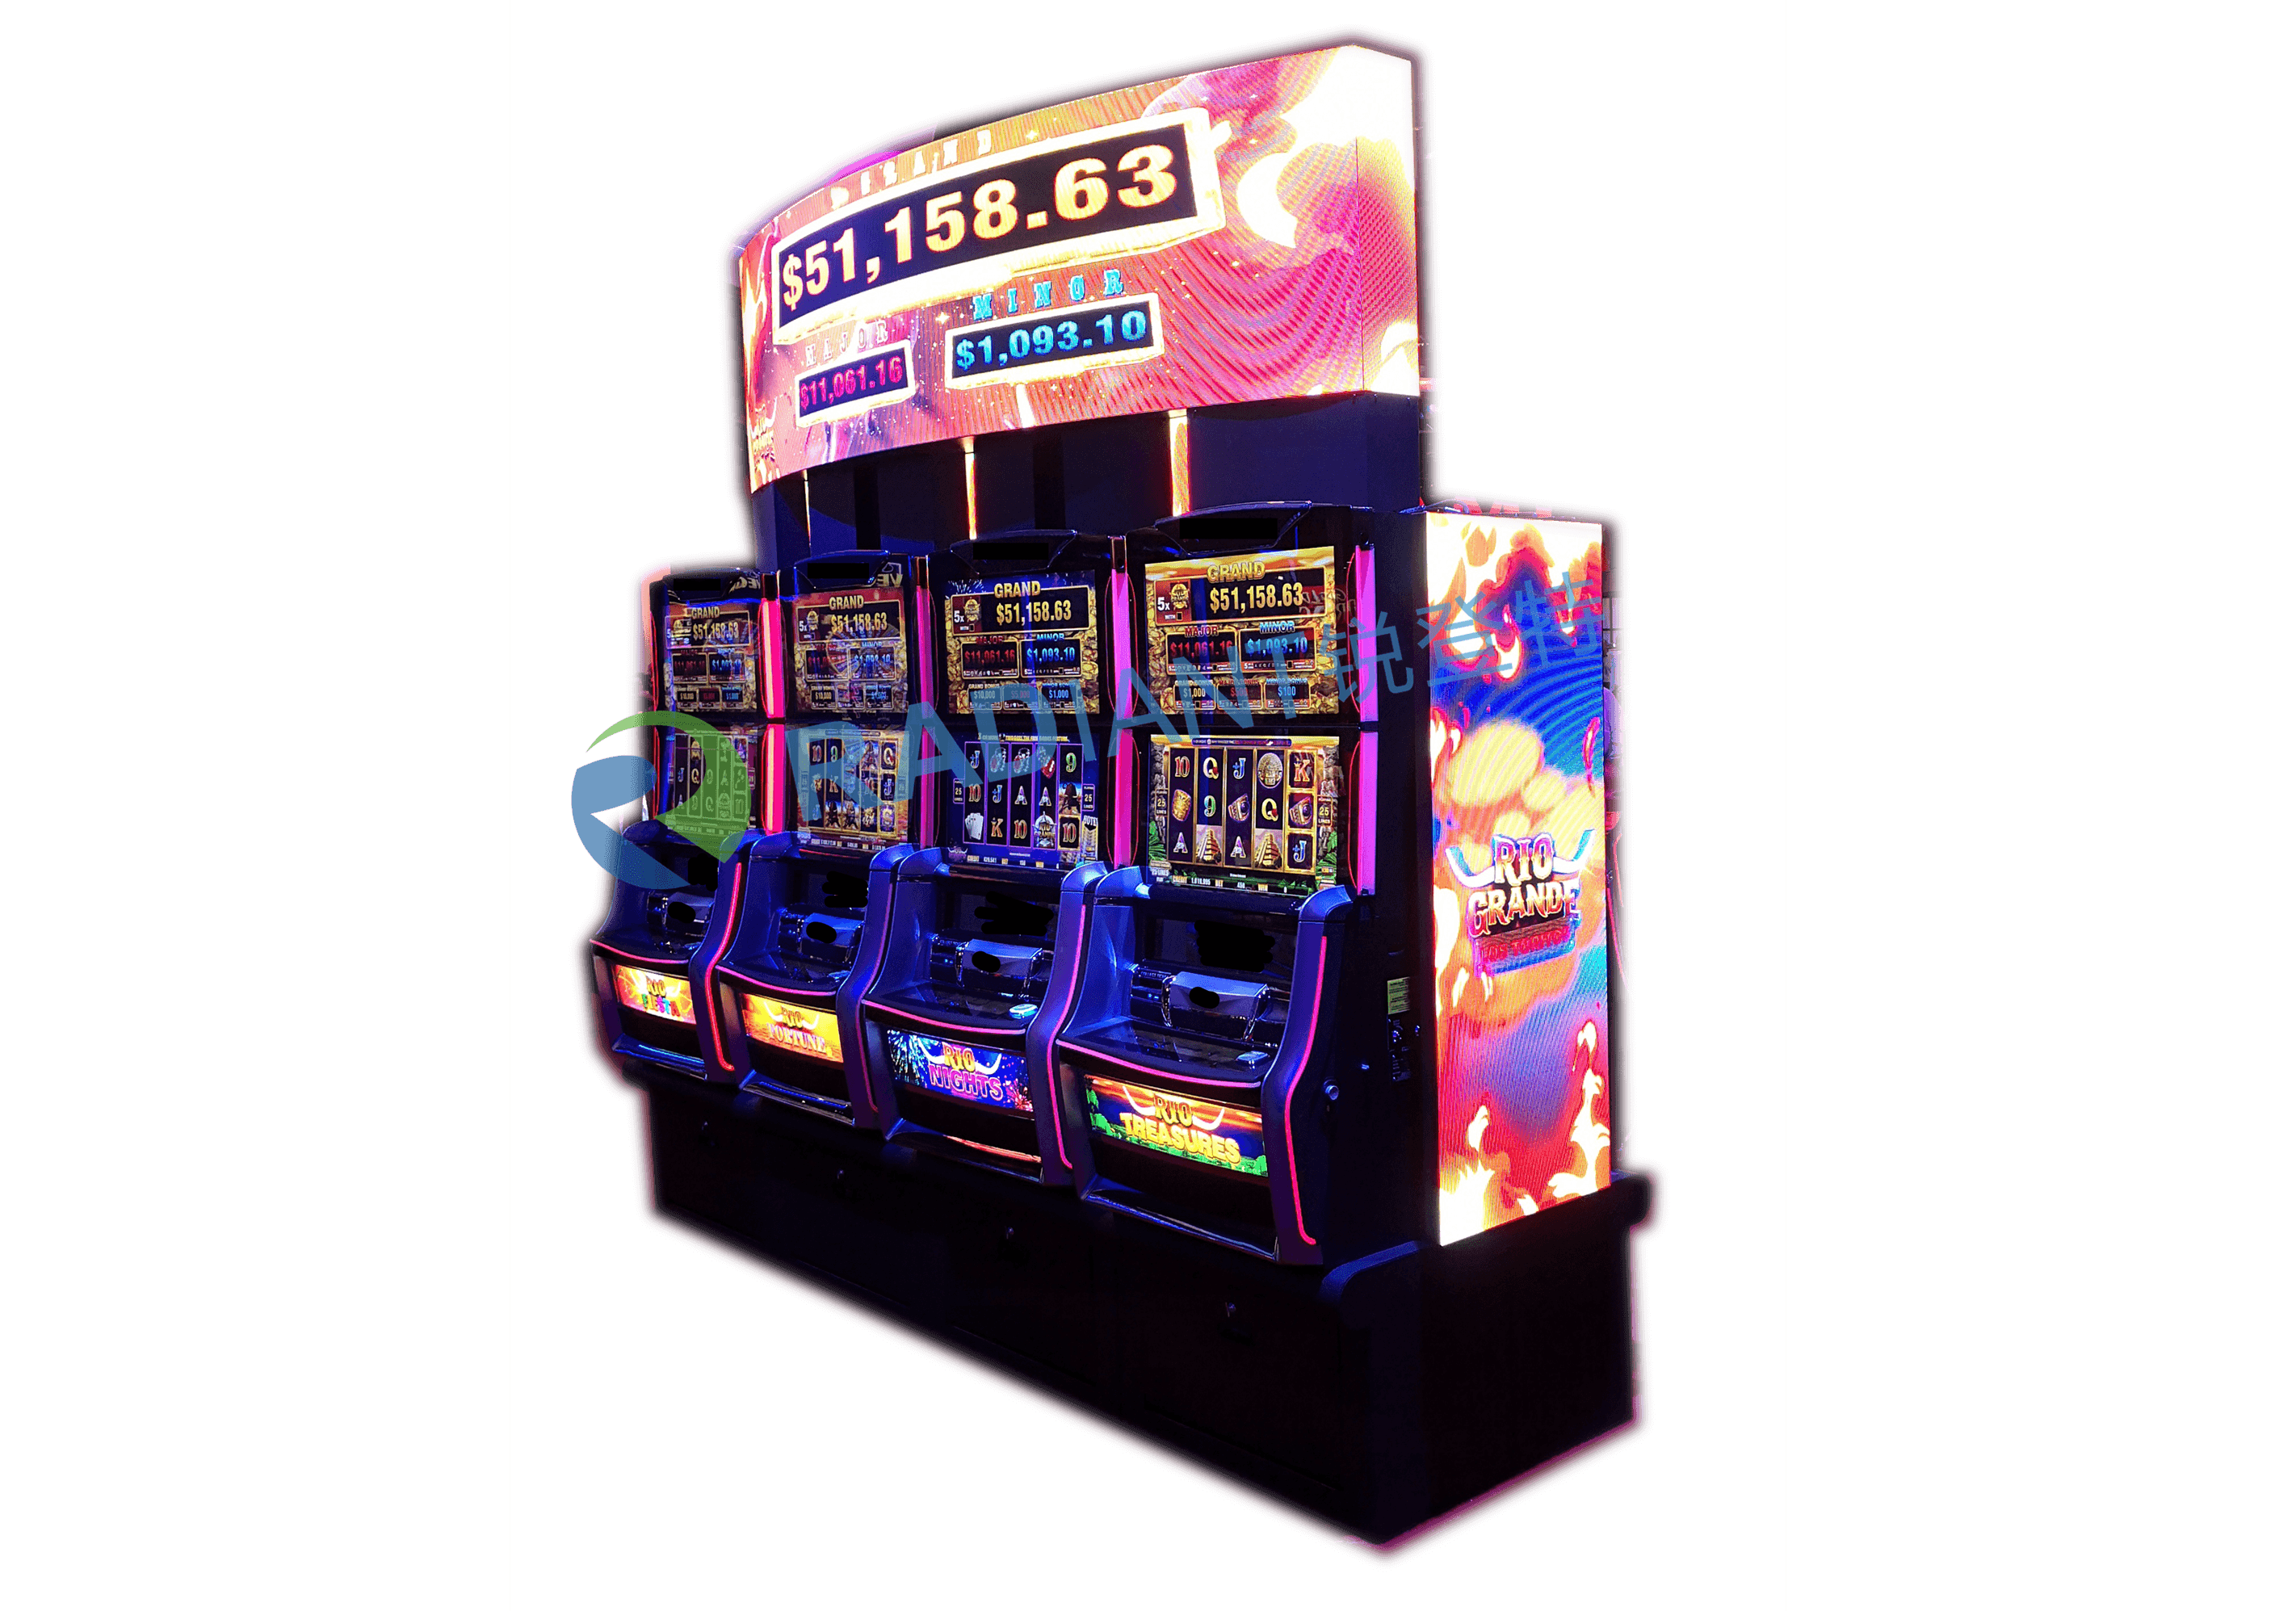 Ellipse LED displej za igre na automatima sa led znakom u objektima za kockanje u kazinu